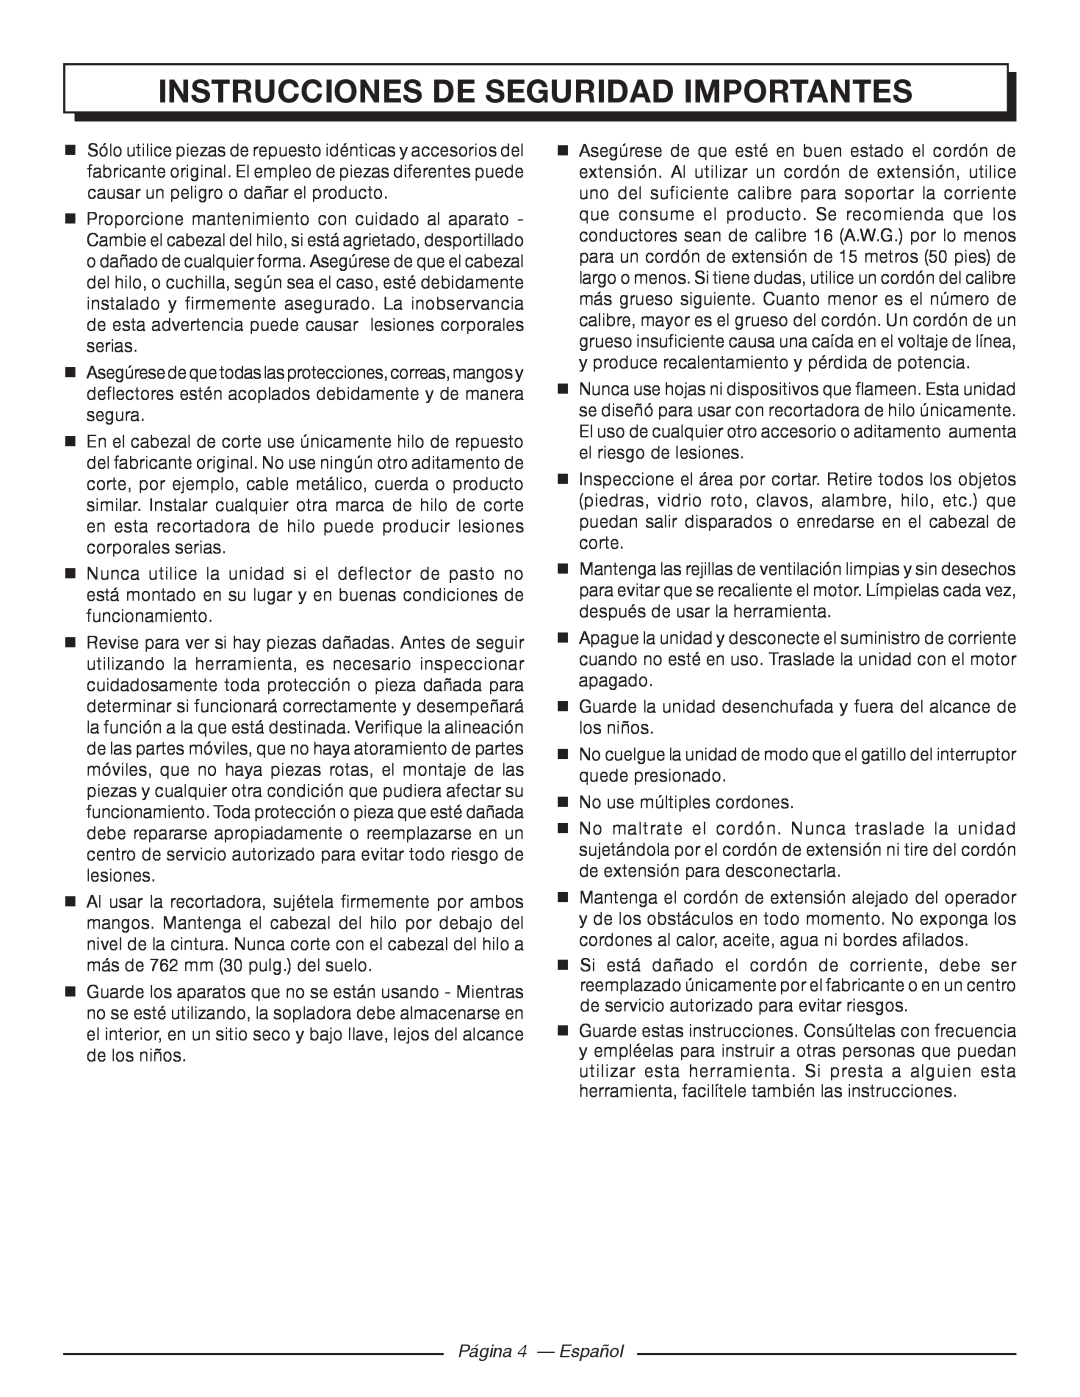 Homelite UT41112 manuel dutilisation Página 4 - Español, Instrucciones De Seguridad Importantes 